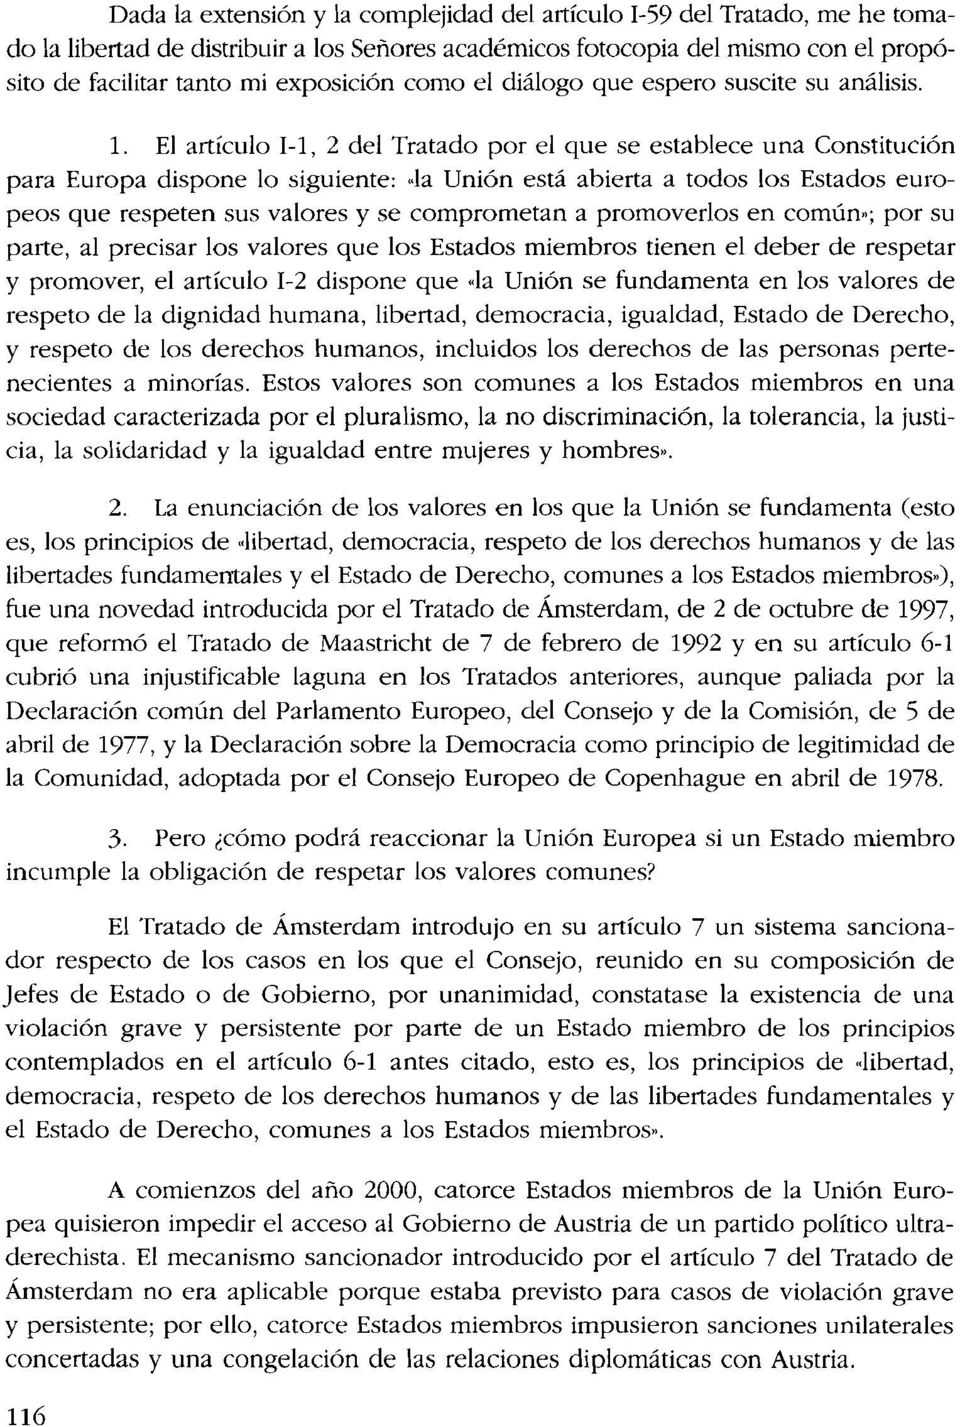 El artículo 1-1, 2 del Tratado por el que se establece una Constitución para Europa dispone lo siguiente: "la Unión está abierta a todos los Estados europeos que respeten sus valores y se comprometan